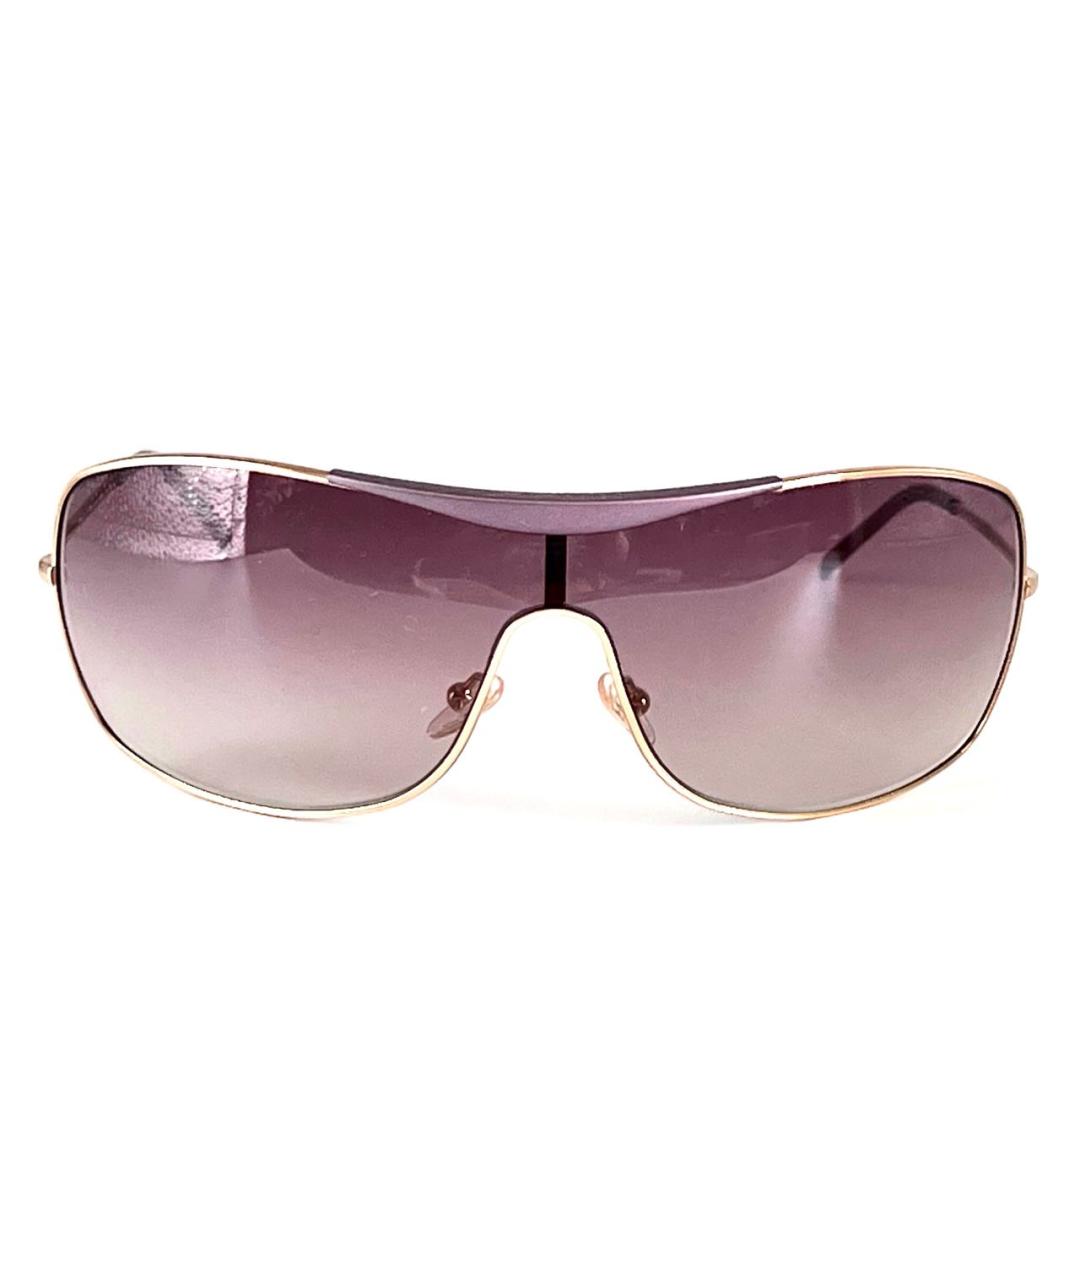 GIORGIO ARMANI Розовые металлические солнцезащитные очки, фото 1